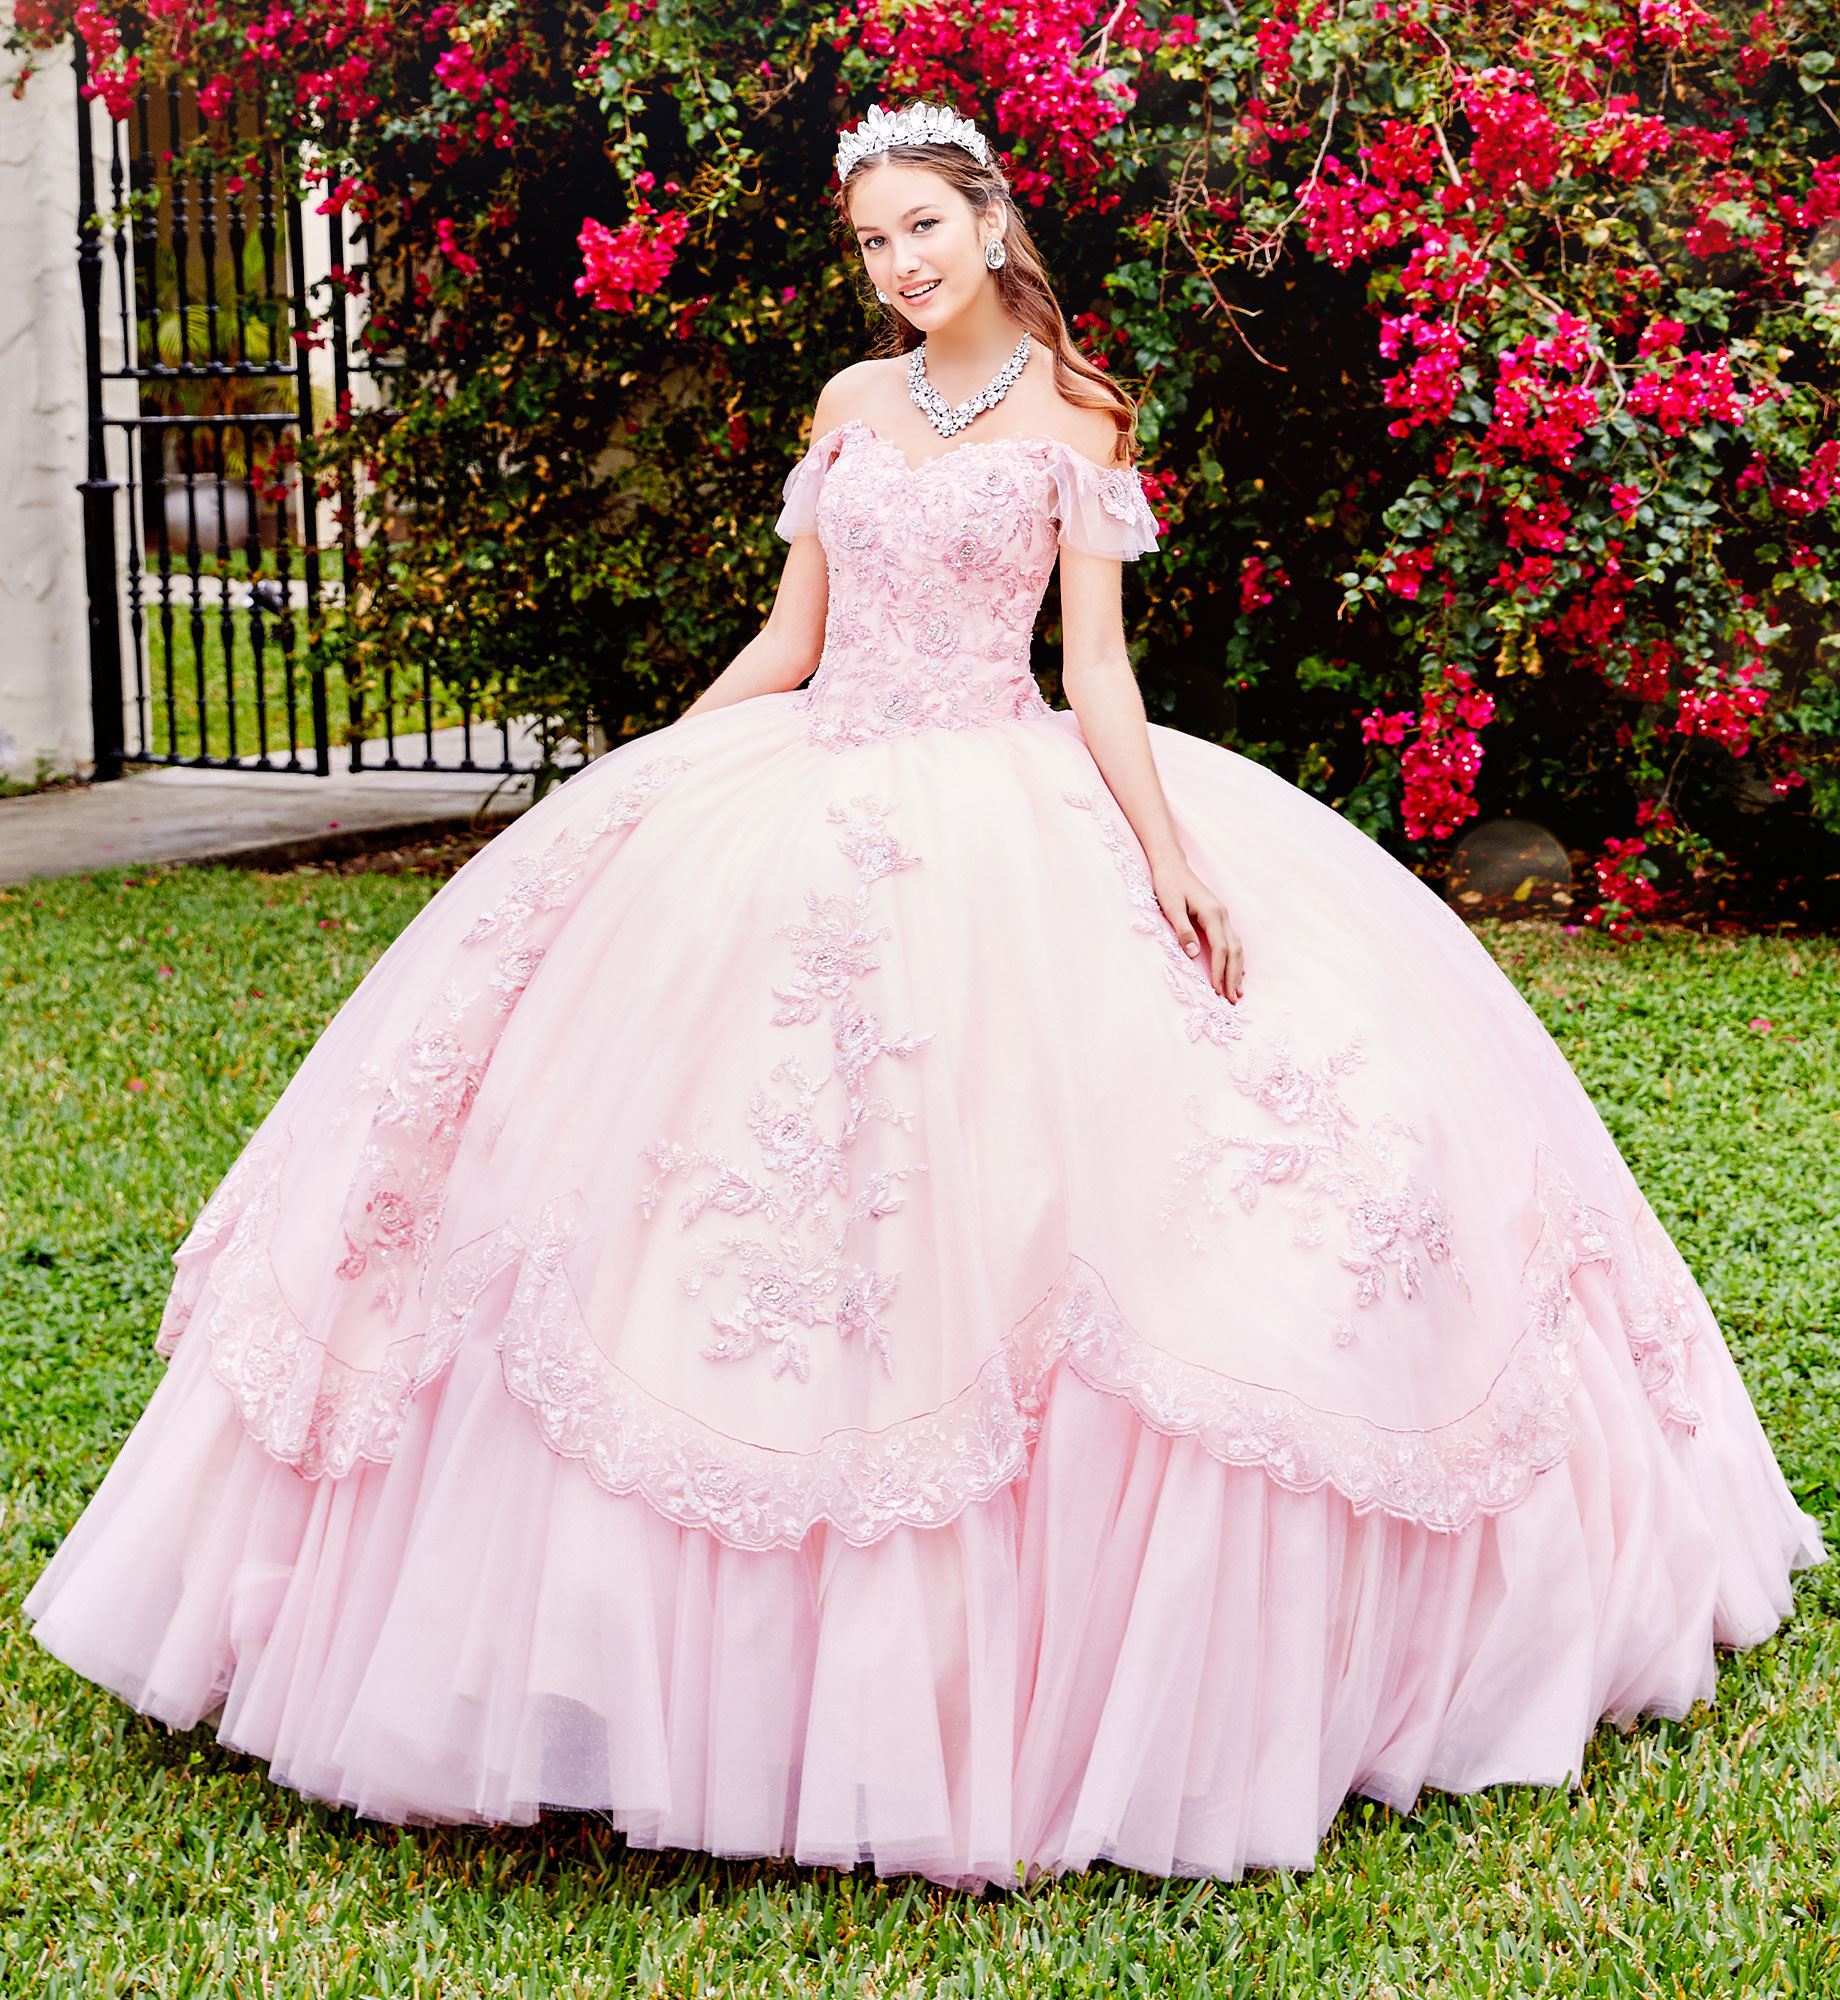 Brunette model in pale pink quinceañera dress